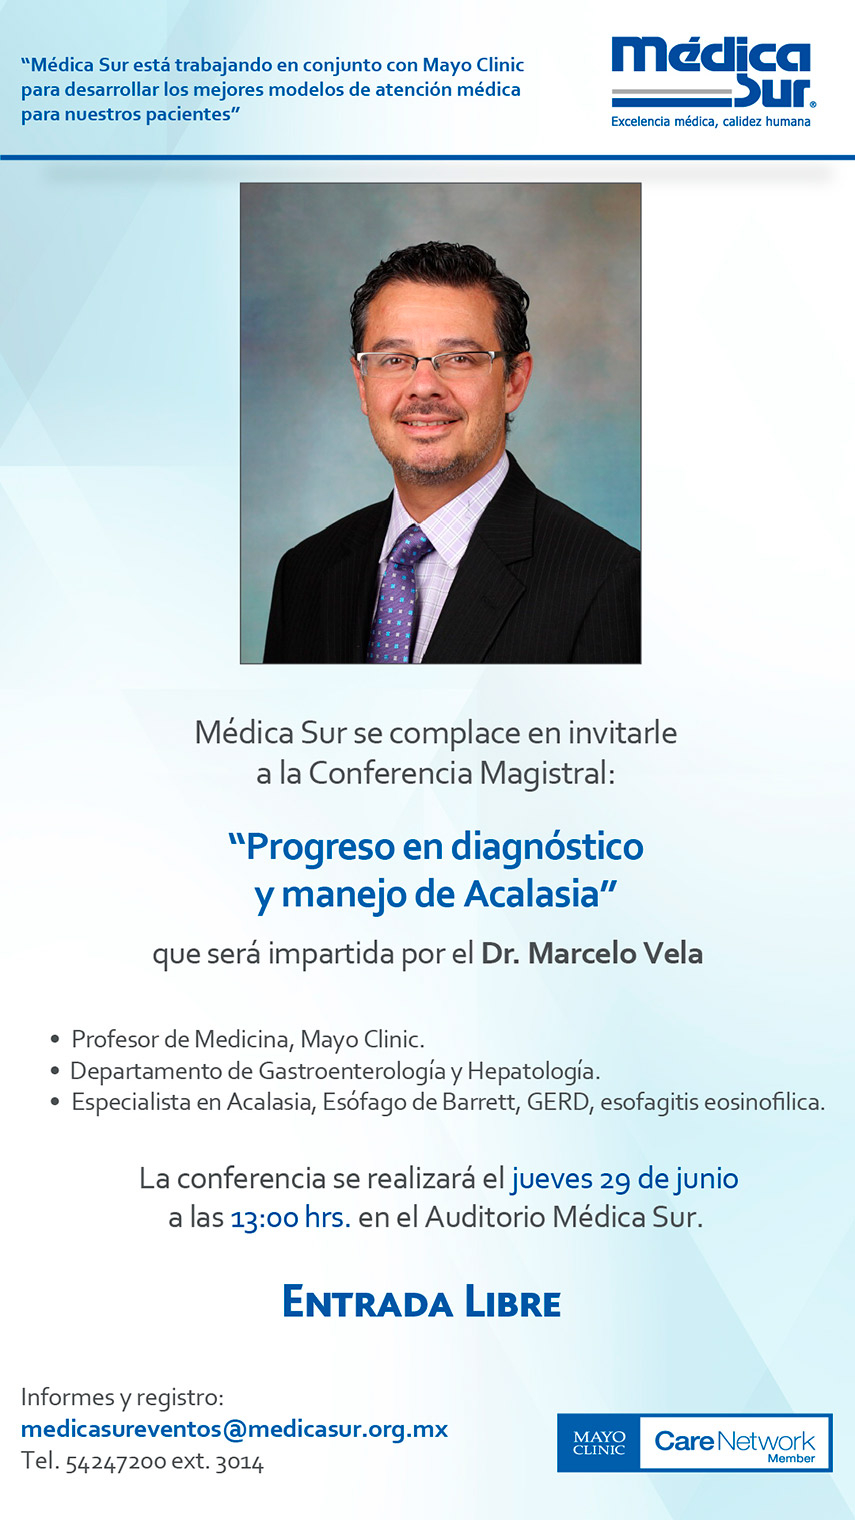 Invitación a la conferencia magistral Progresos en diagnóstico y manejo de Acalacia